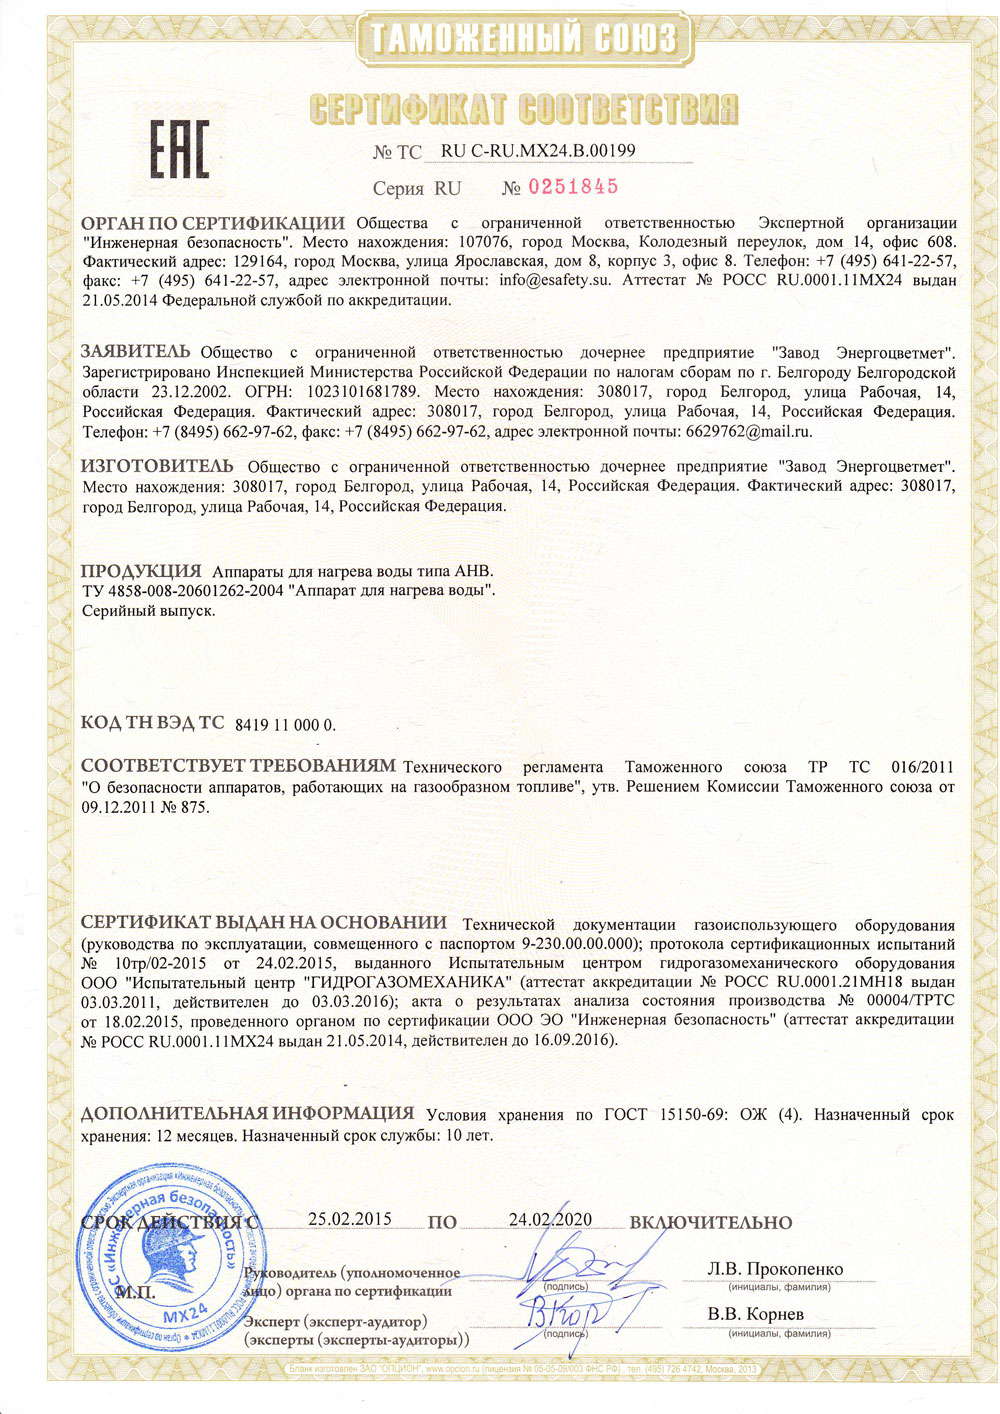 Сертификат соответствия на аппарат нагрева воды АНВ